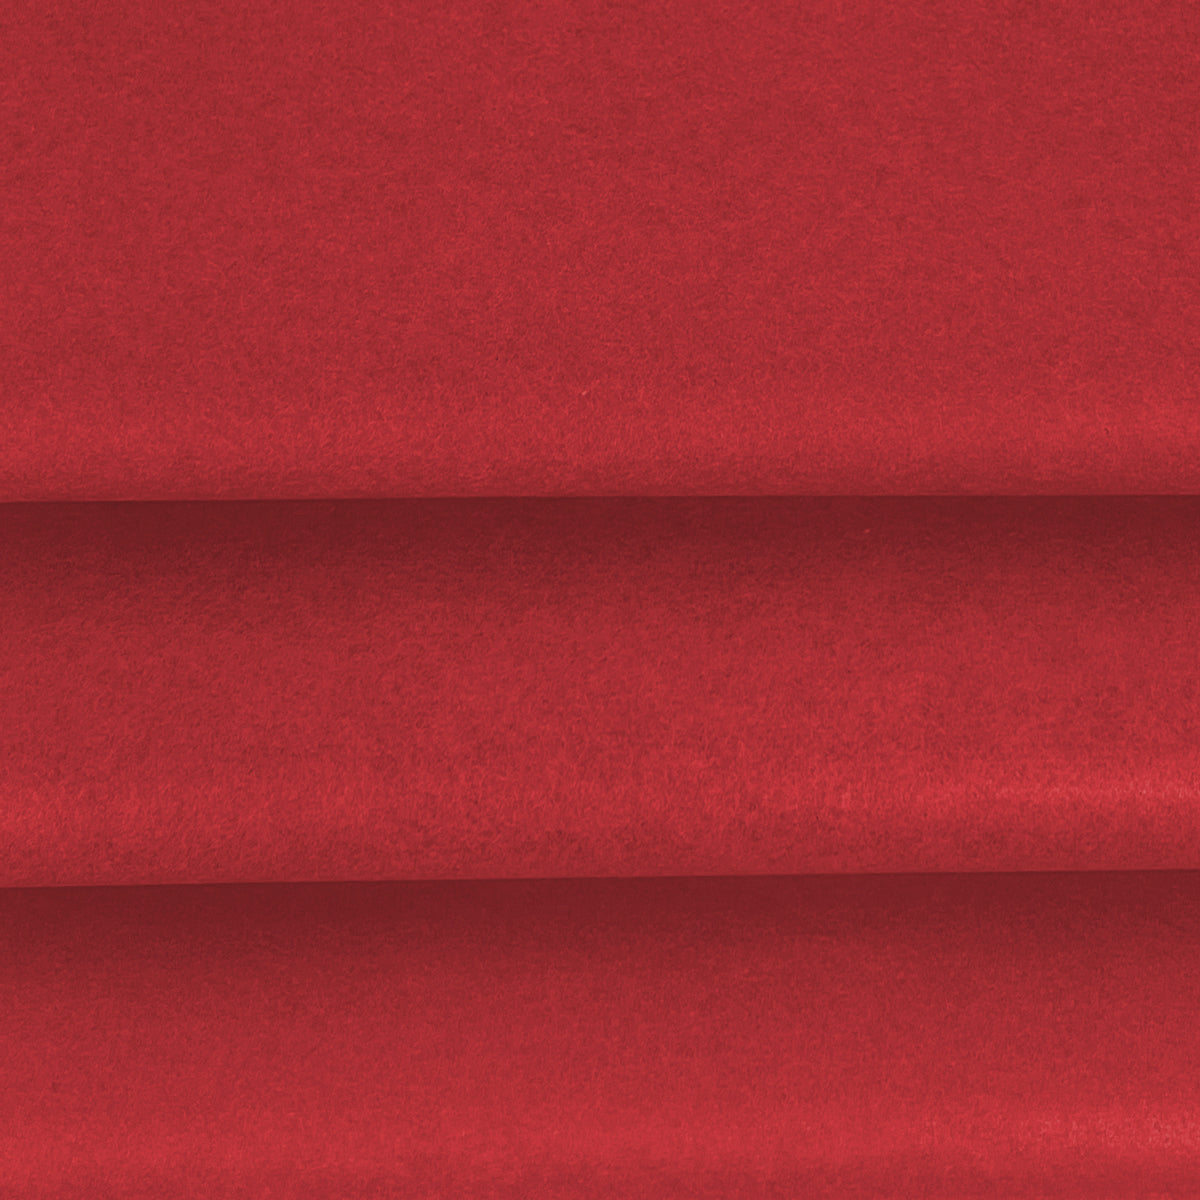 Vloeipapier kleur Rood